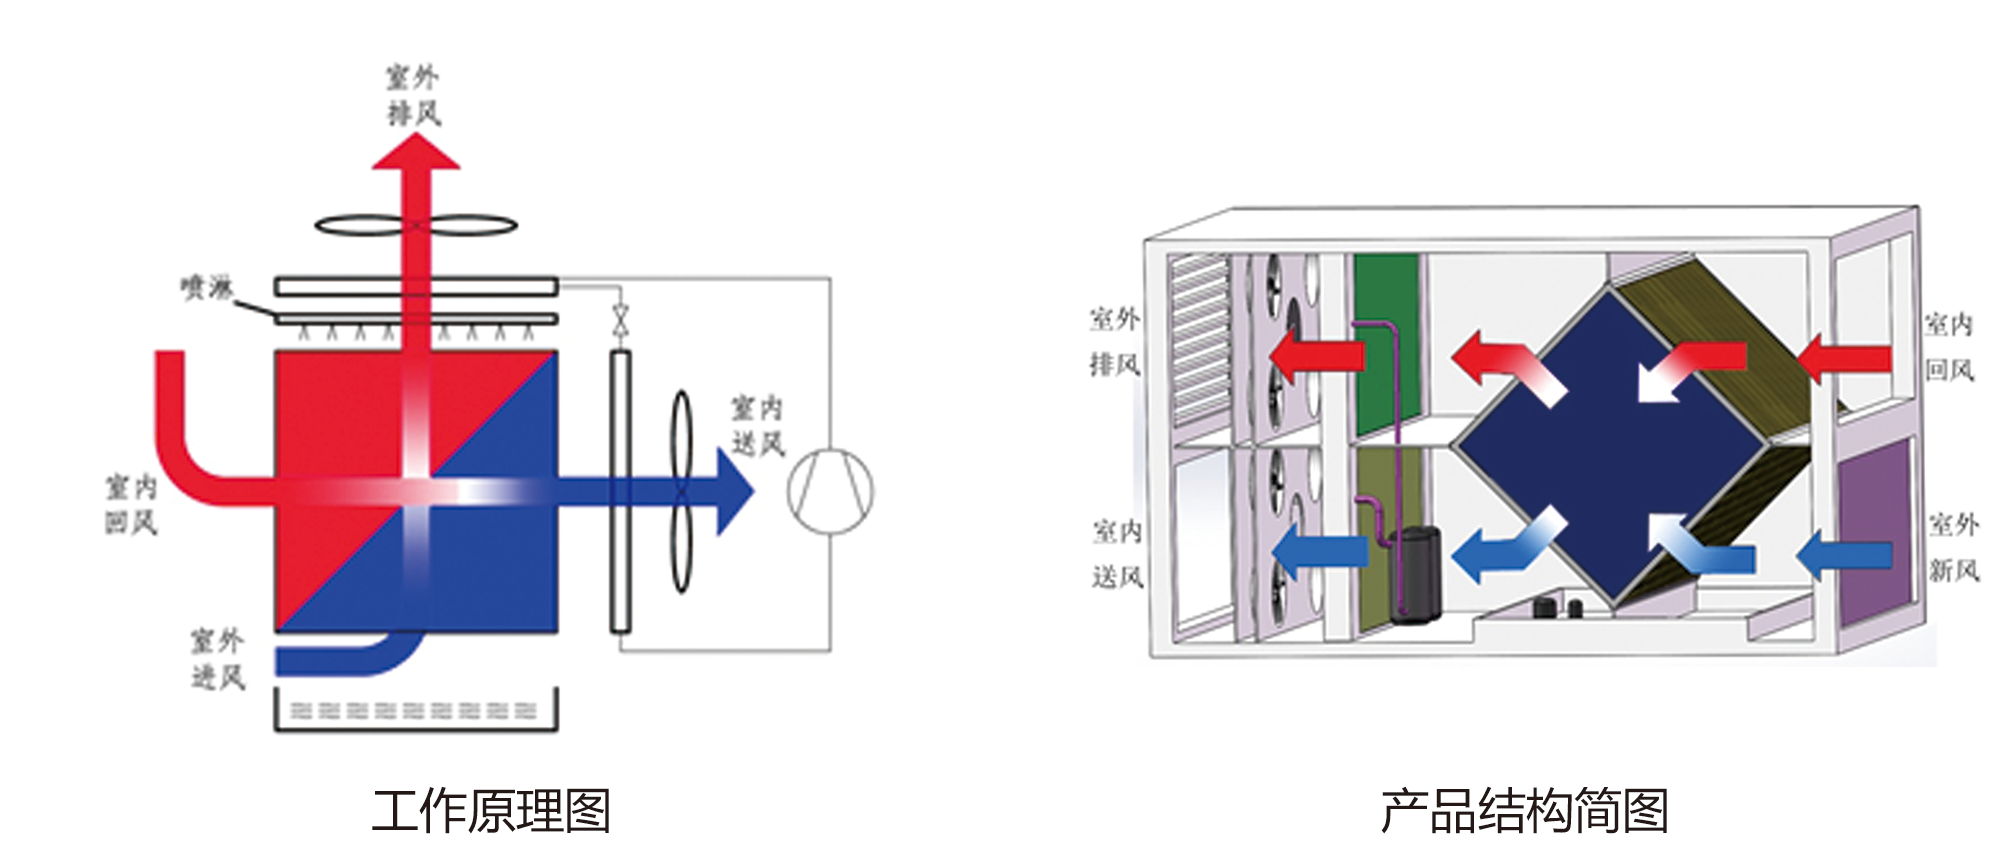 间接蒸发式冷却系统(图2)